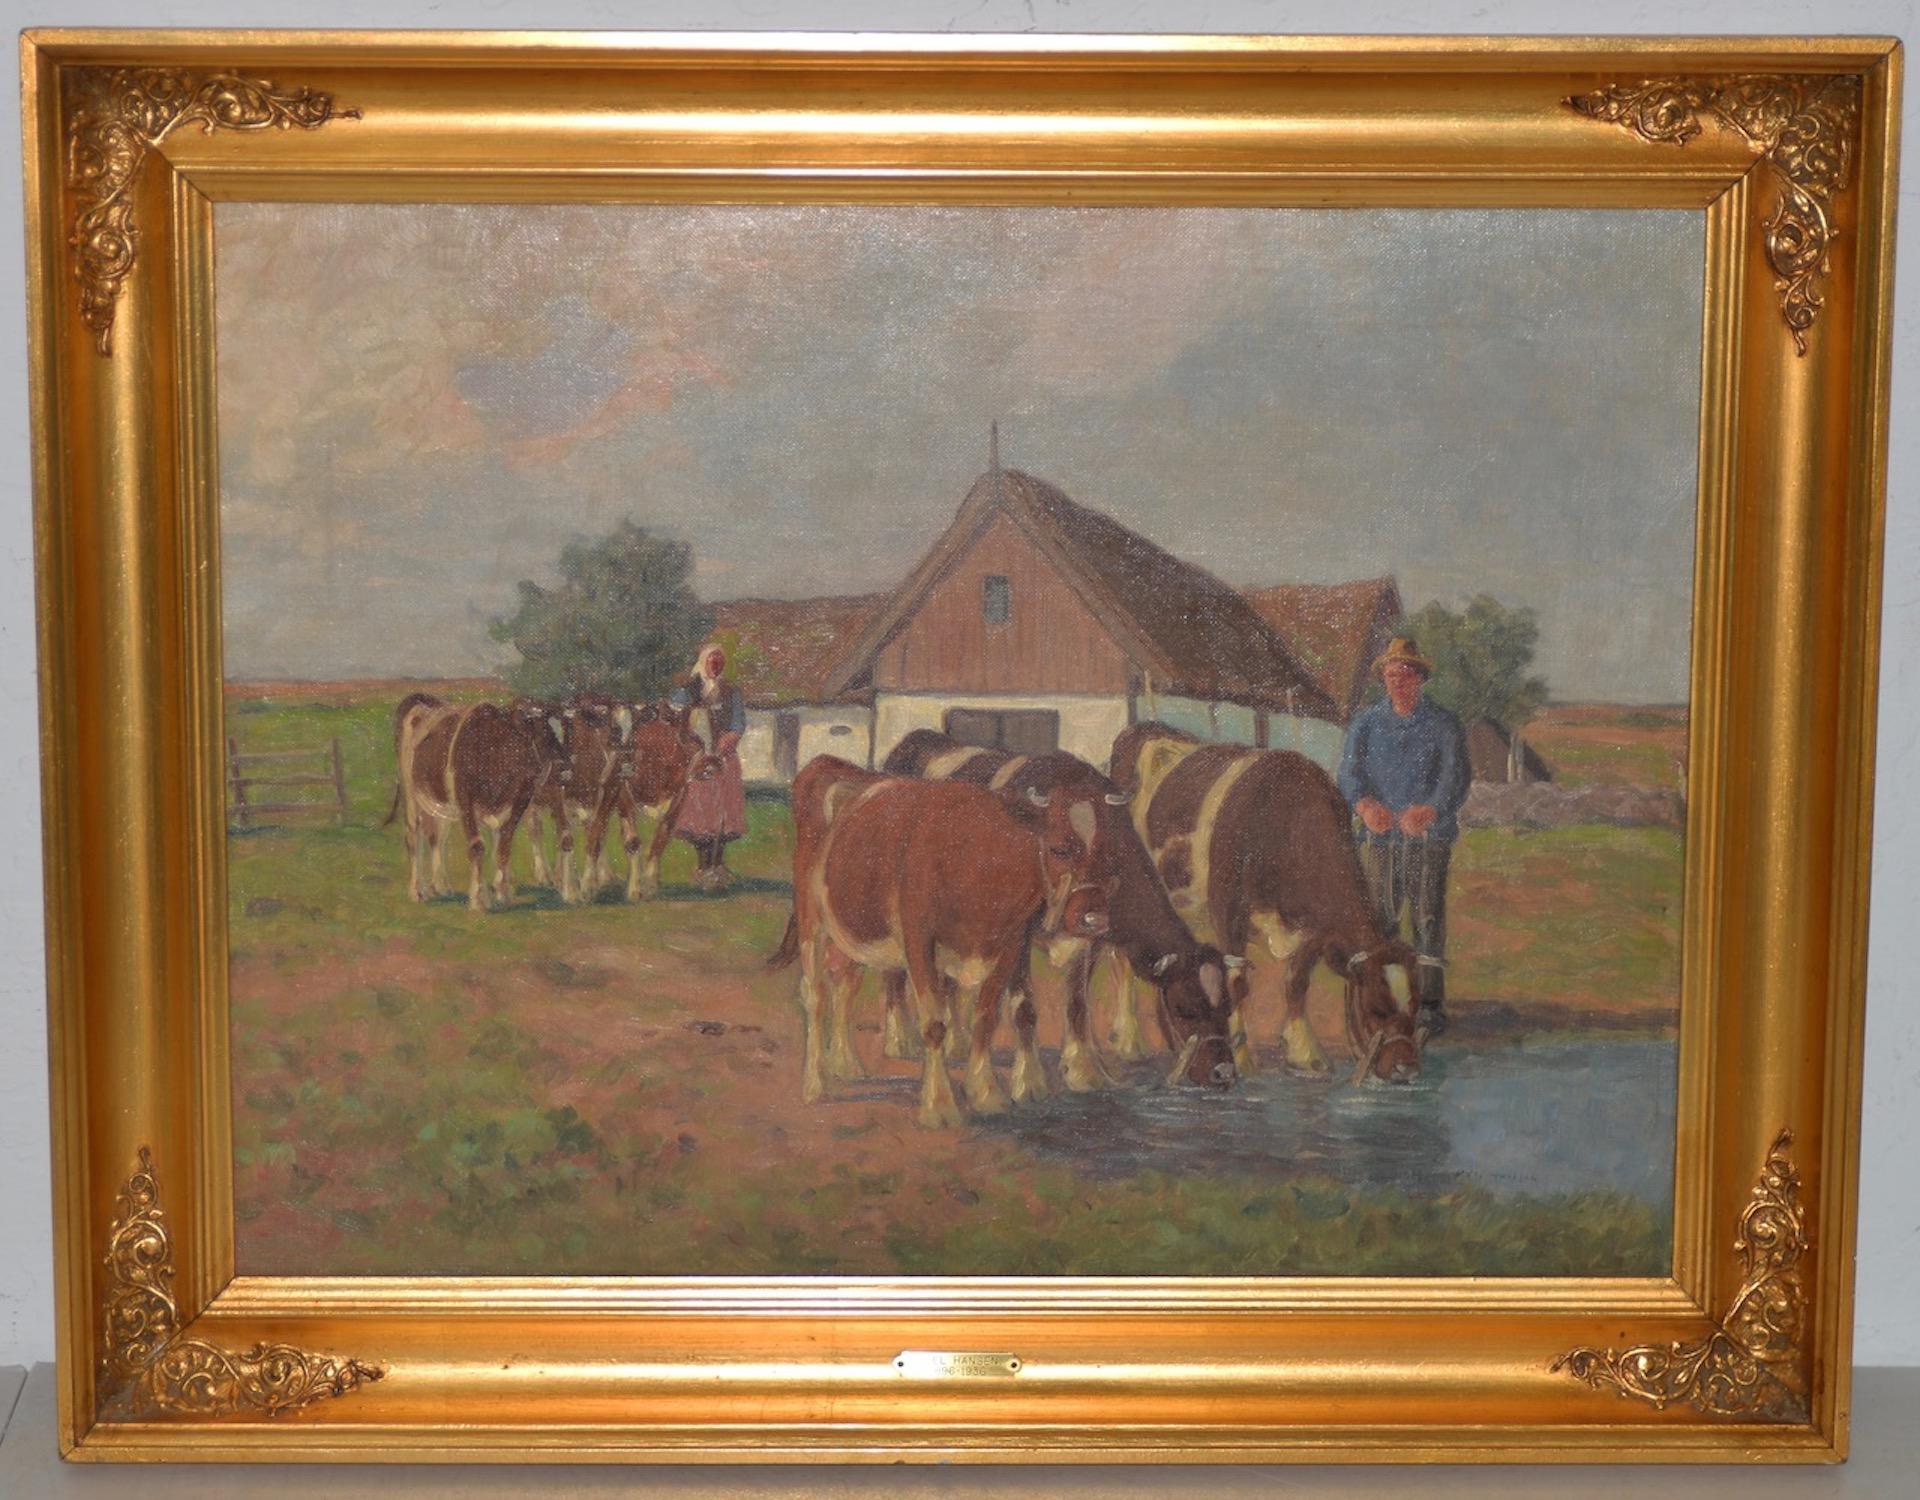 Axel Hansen (Dutch, 1896-1936) Landhauslandschaft mit Rindern, ca. 1920er Jahre

Schönes impressionistisches Ölgemälde des dänischen Malers Axel Hansen.

Das Gemälde zeigt ein junges Paar auf dem Bauernhof der Familie. Ihr Haus ist ein